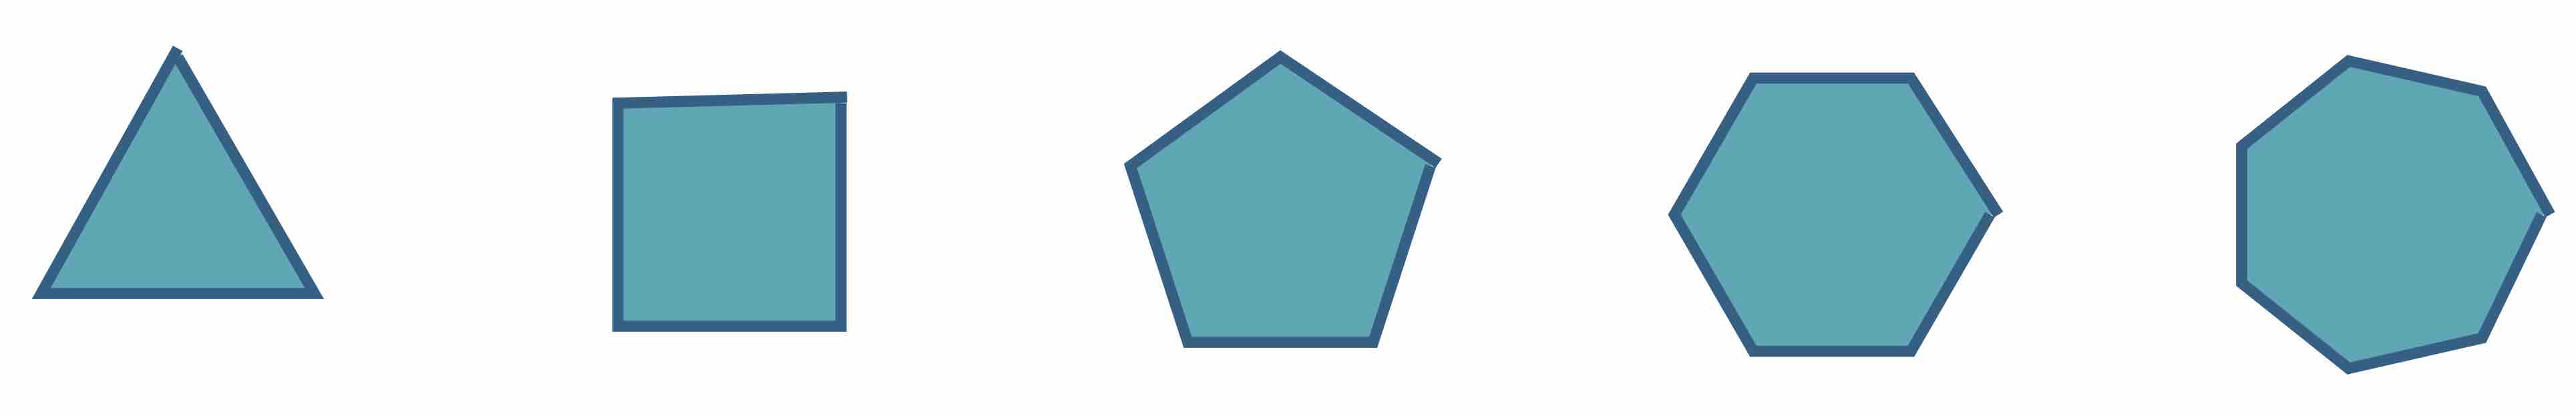 Regular triangle, square, pentagon, hexagon, and septagon